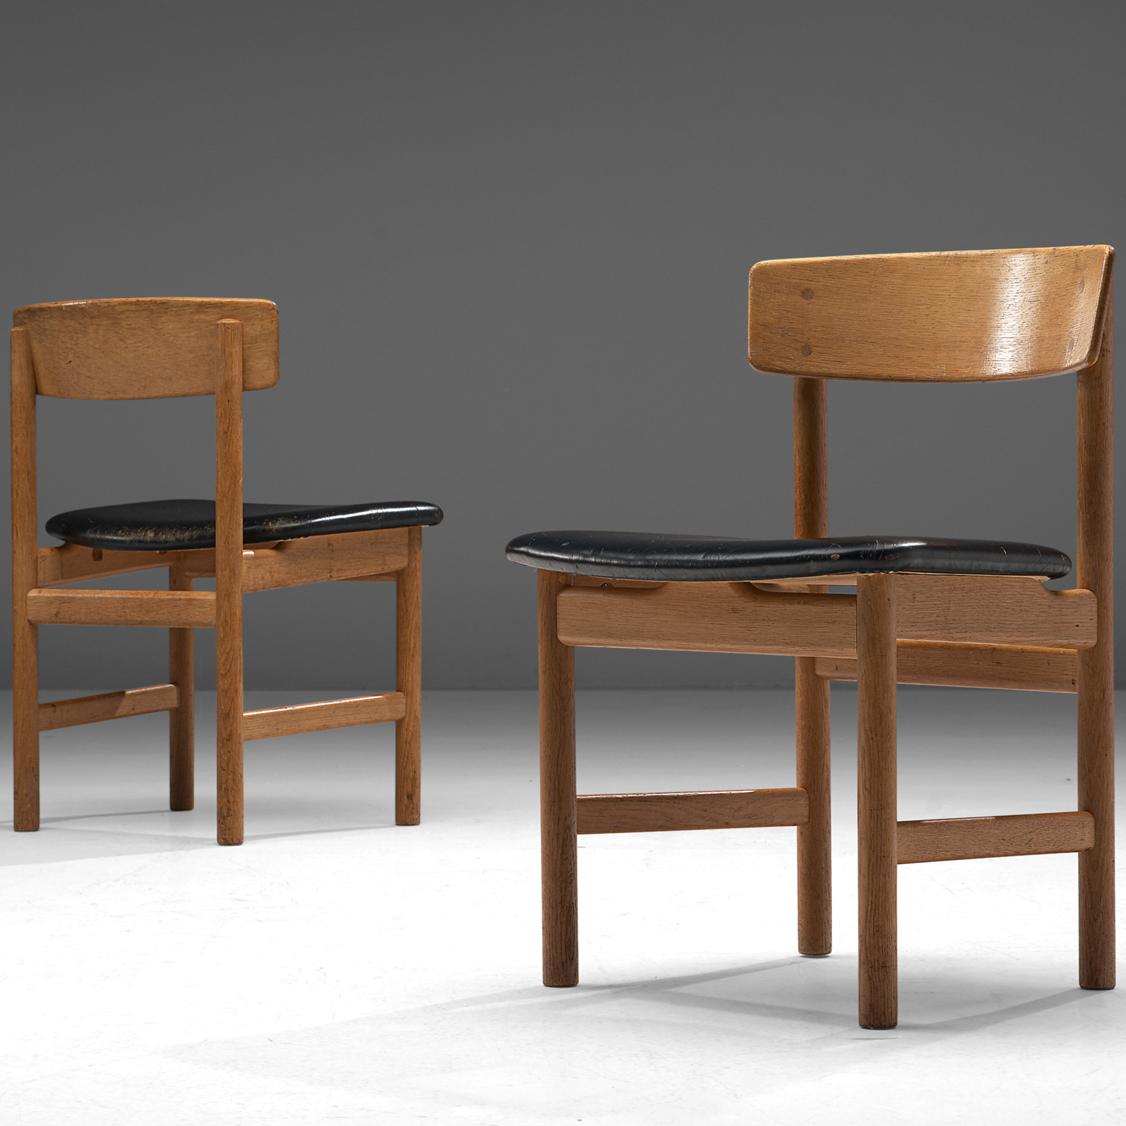 Børge Mogensen pour Fredericia Stolefabrik, paire de chaises de salle à manger, modèle 3236, chêne, cuir, Danemark, années 1960

Paire de chaises de salle à manger en chêne et cuir noir. Ces chaises présentent de belles lignes dans leur apparence